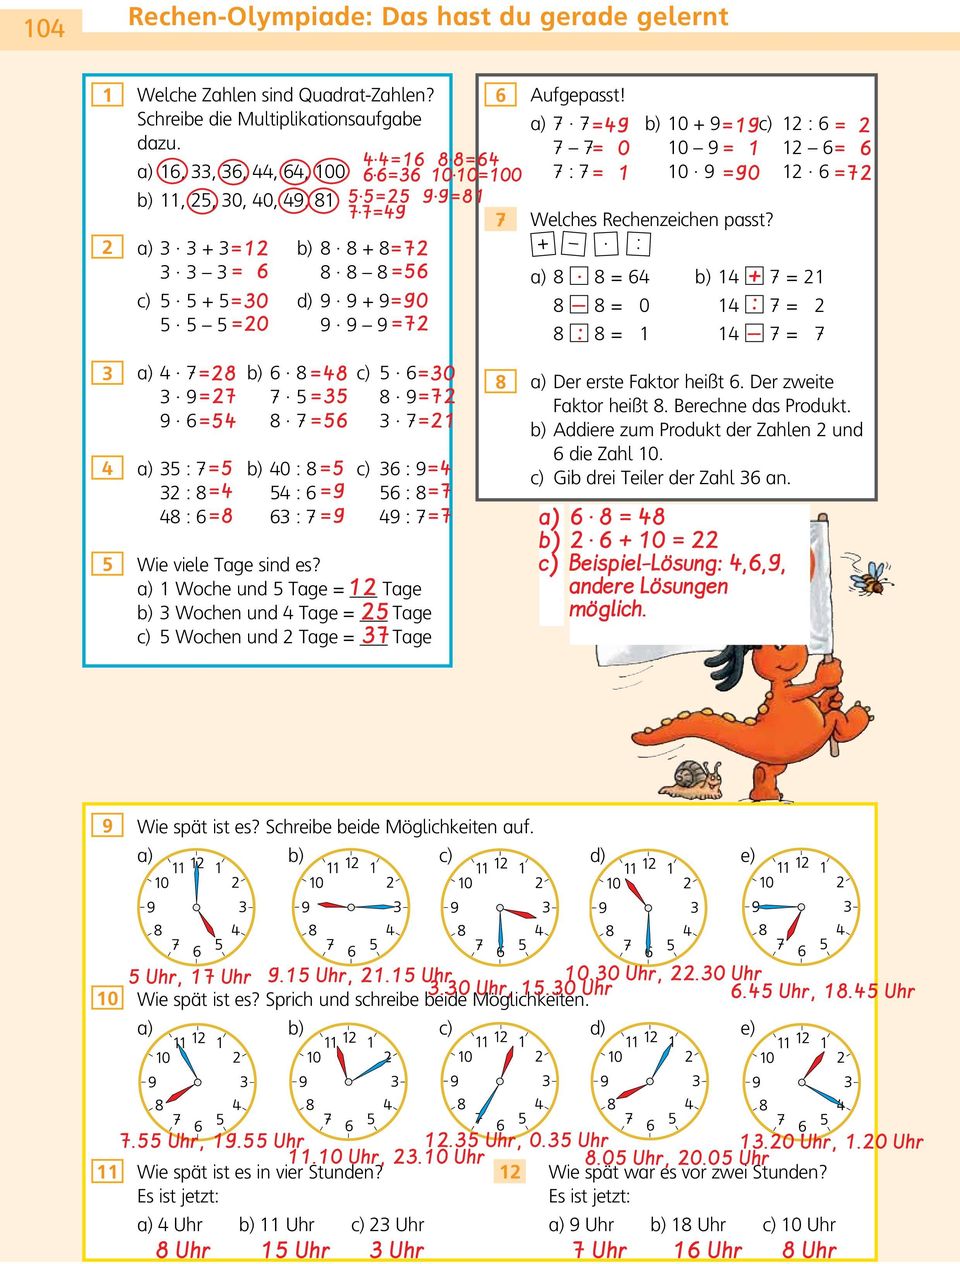 Addiere zum Produkt der Zahlen und die Zahl 0. c) Gib drei Teiler der Zahl an. c) 0 Beispiel-Lösung,,, andere Lösungen möglich. Wie spät ist es? Schreibe beide Möglichkeiten auf. c) d) e) 0 Uhr, Uhr.